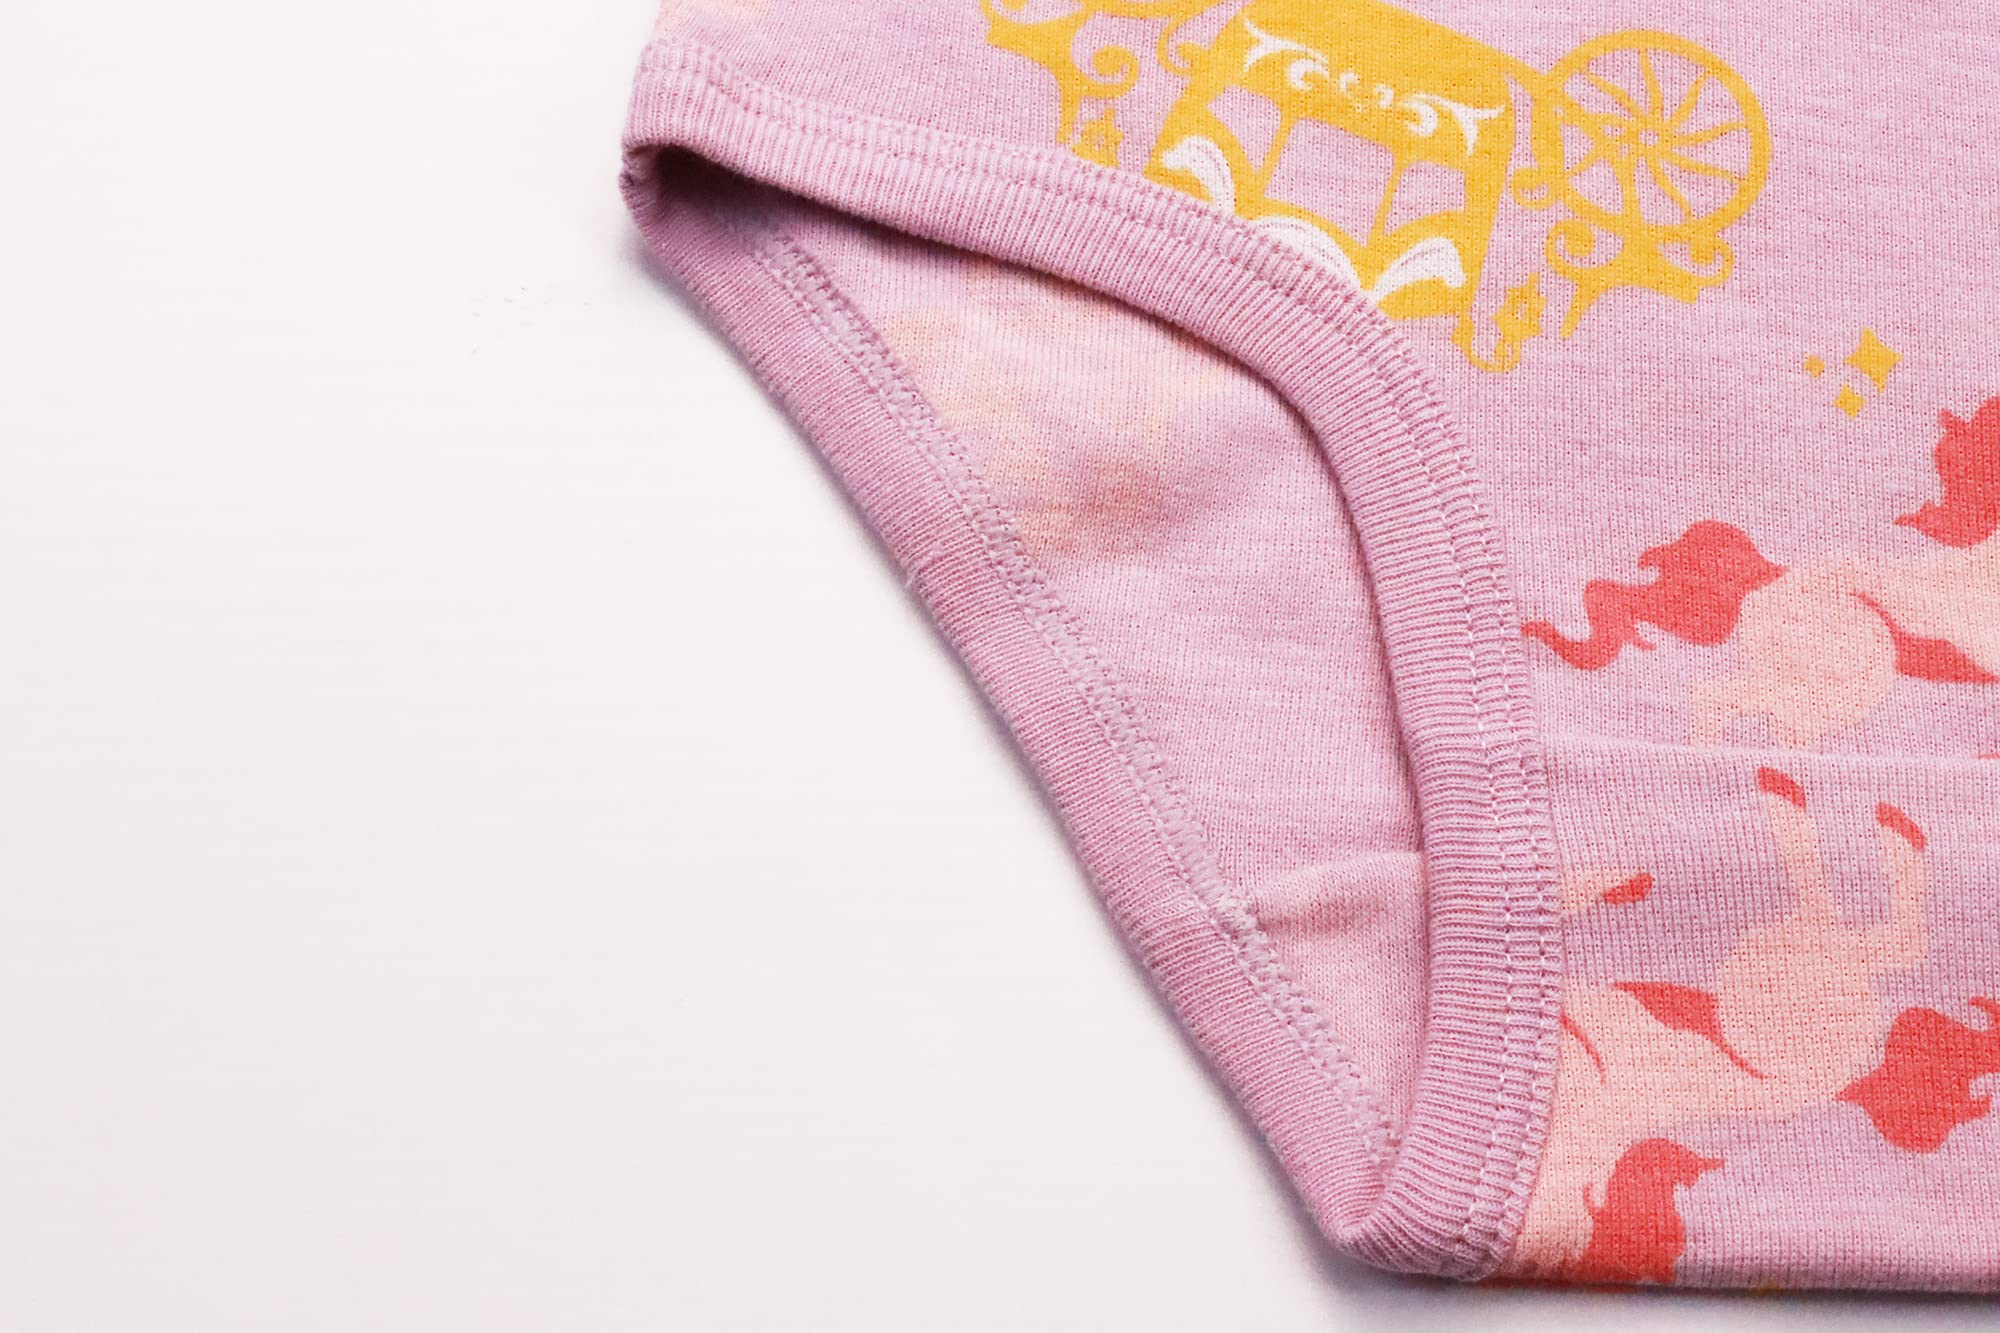 Boboking Soft Cotton Underwear Toddler Girls'Briefs Soft Undies